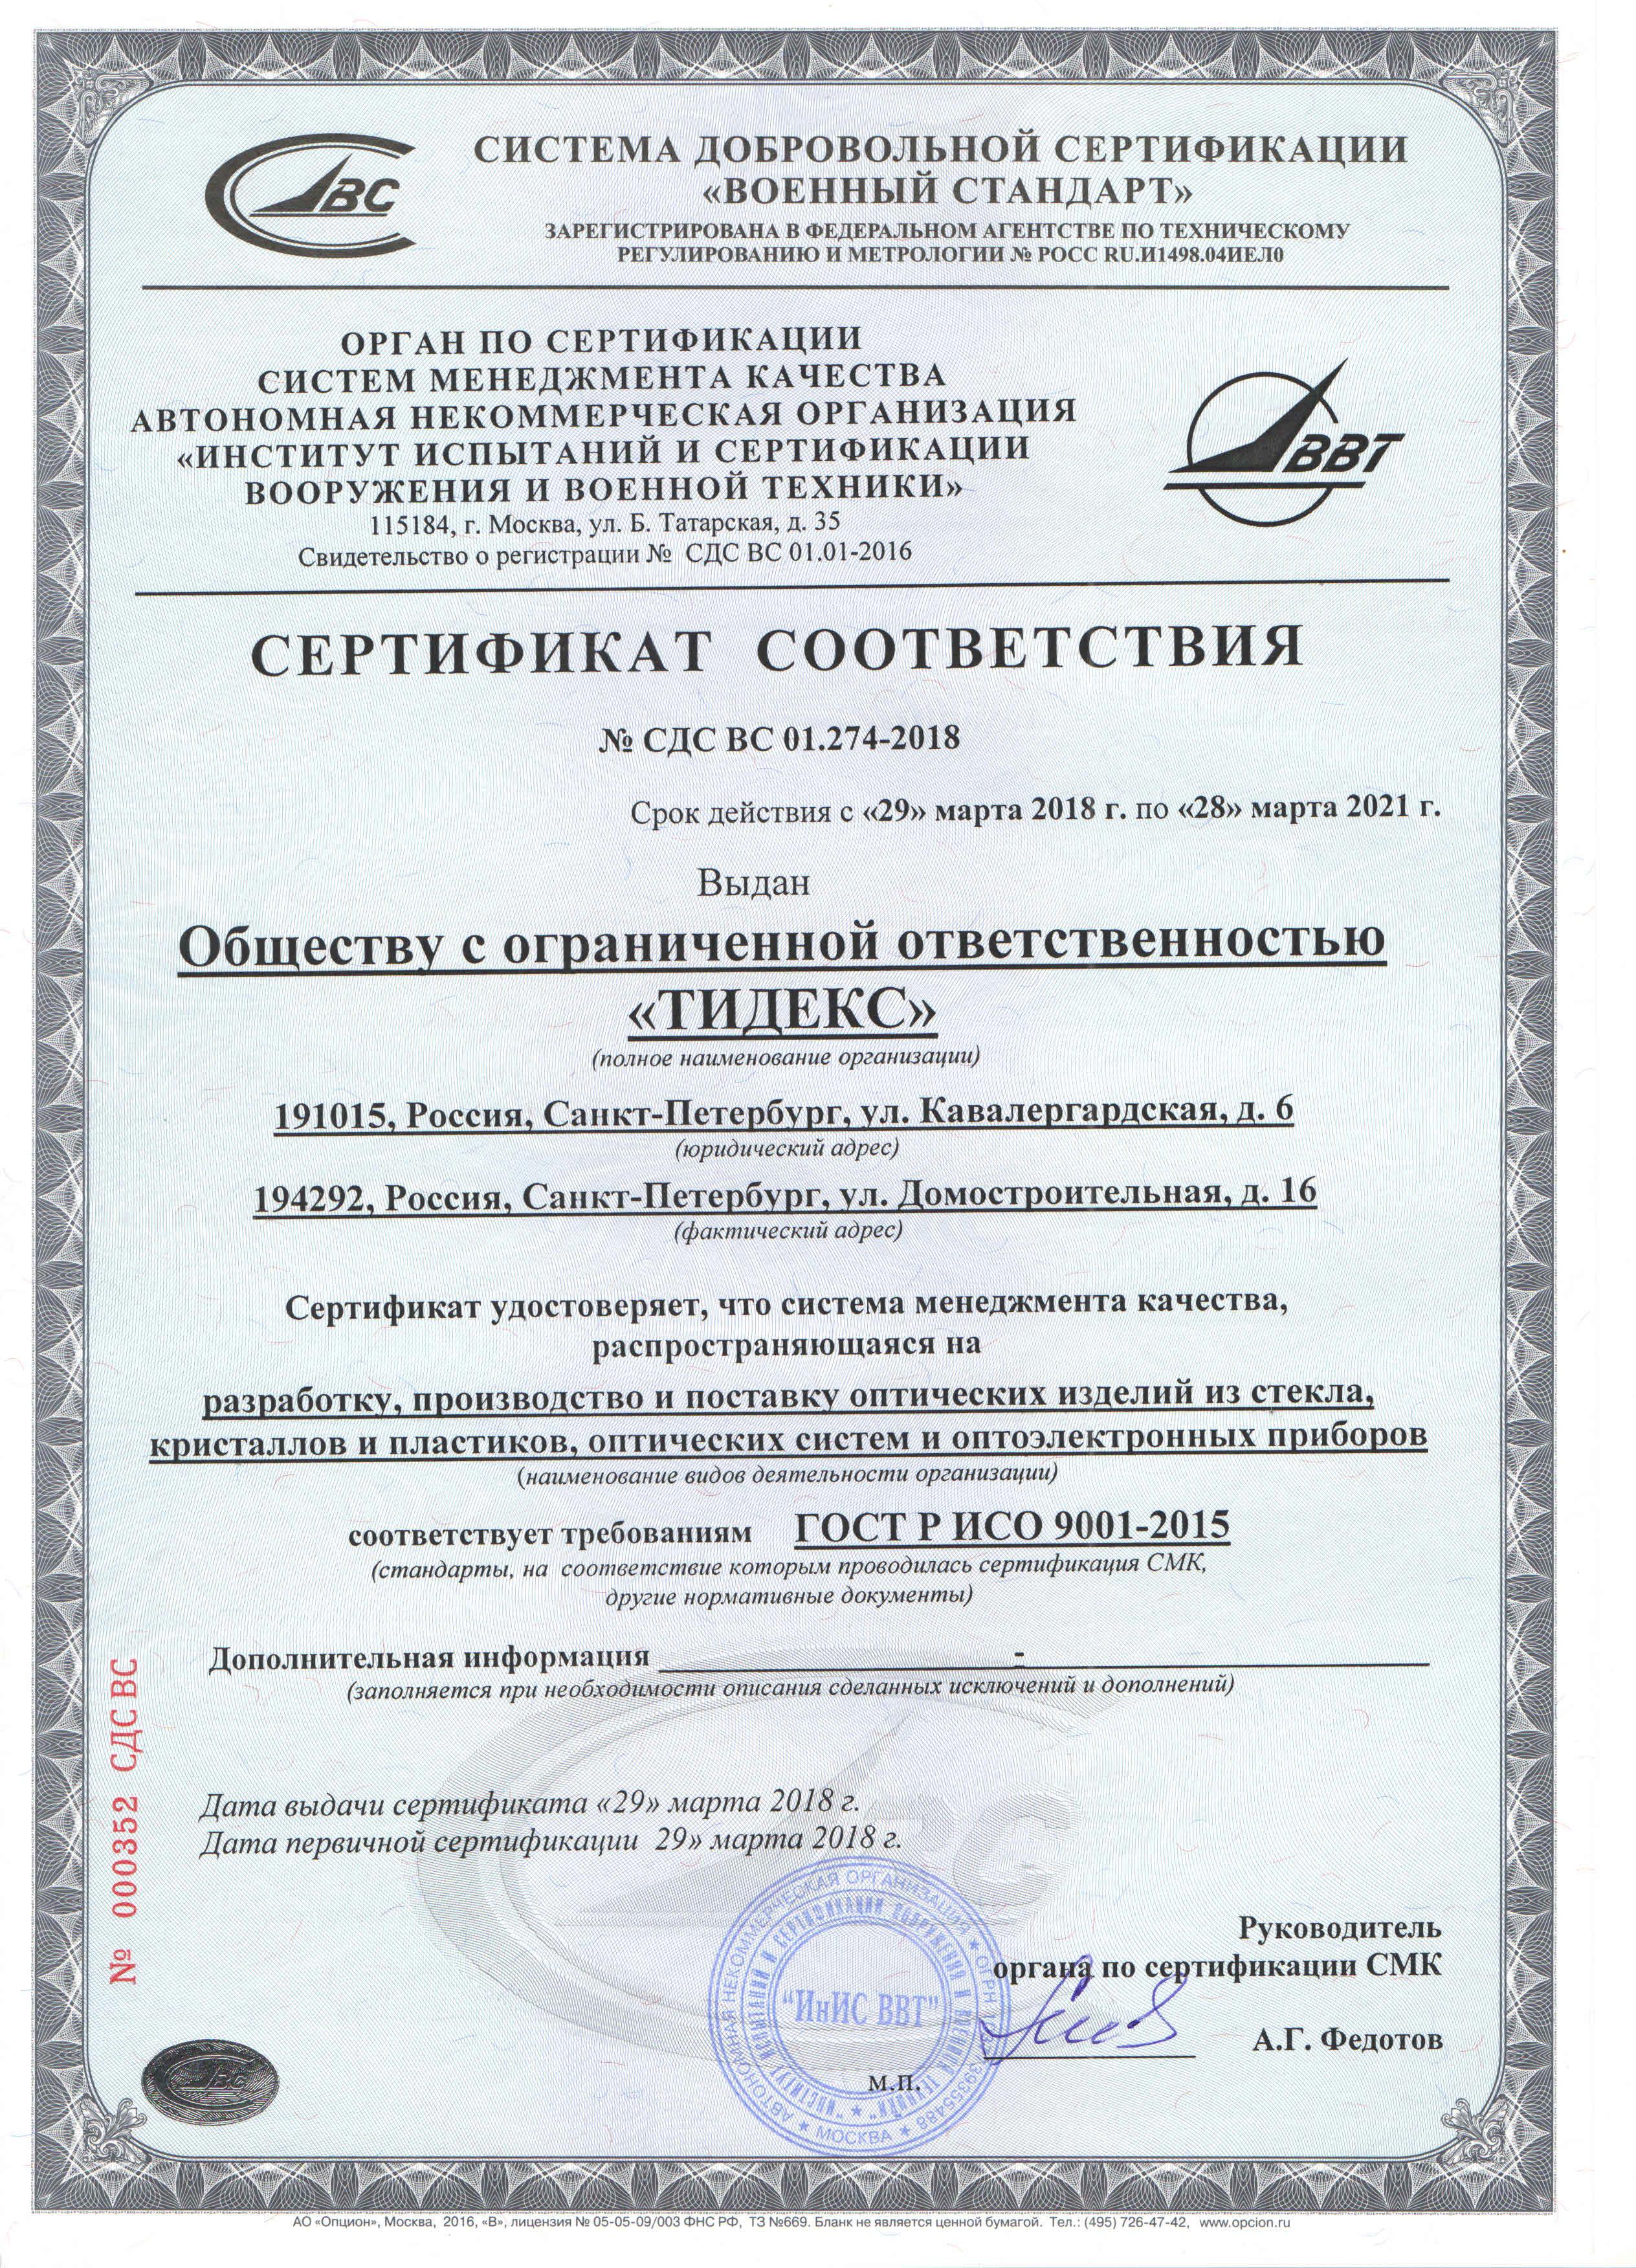 Гост смк 2015. Сертификат ГОСТ Р ИСО 9001. Сертификат ГОСТ Р ИСО 9001-2015 (ISO 9001:2015). ГОСТ Р ИСО 9001 (ISO 9001) сертификат. Сертификат СМК ГОСТ Р ИСО 9001-2015.